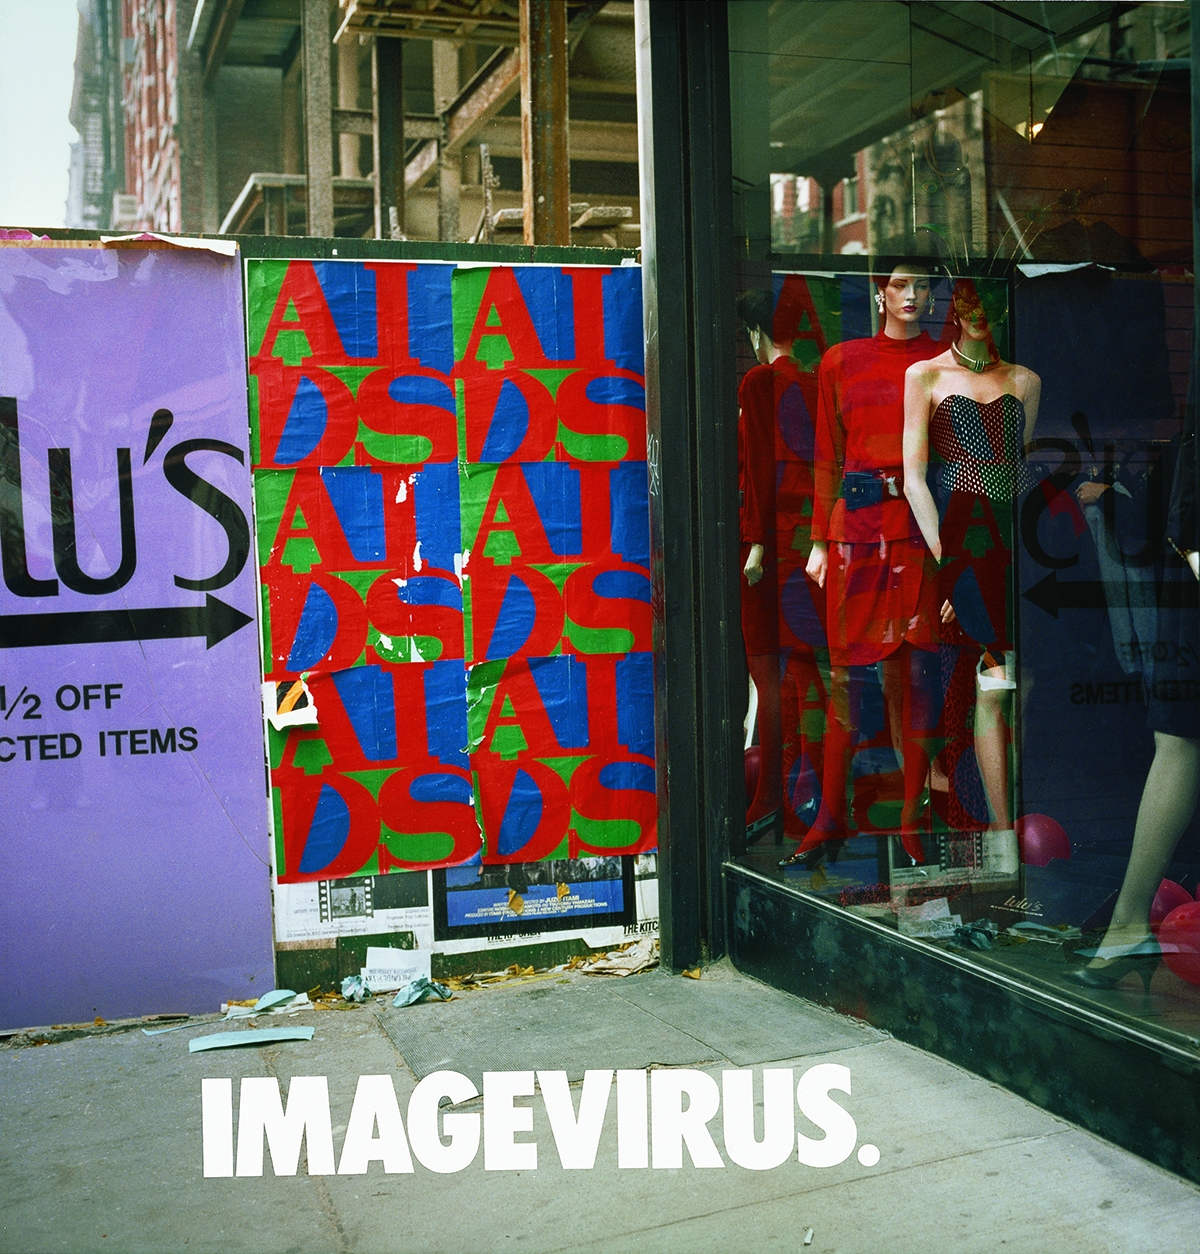 Imagevirus